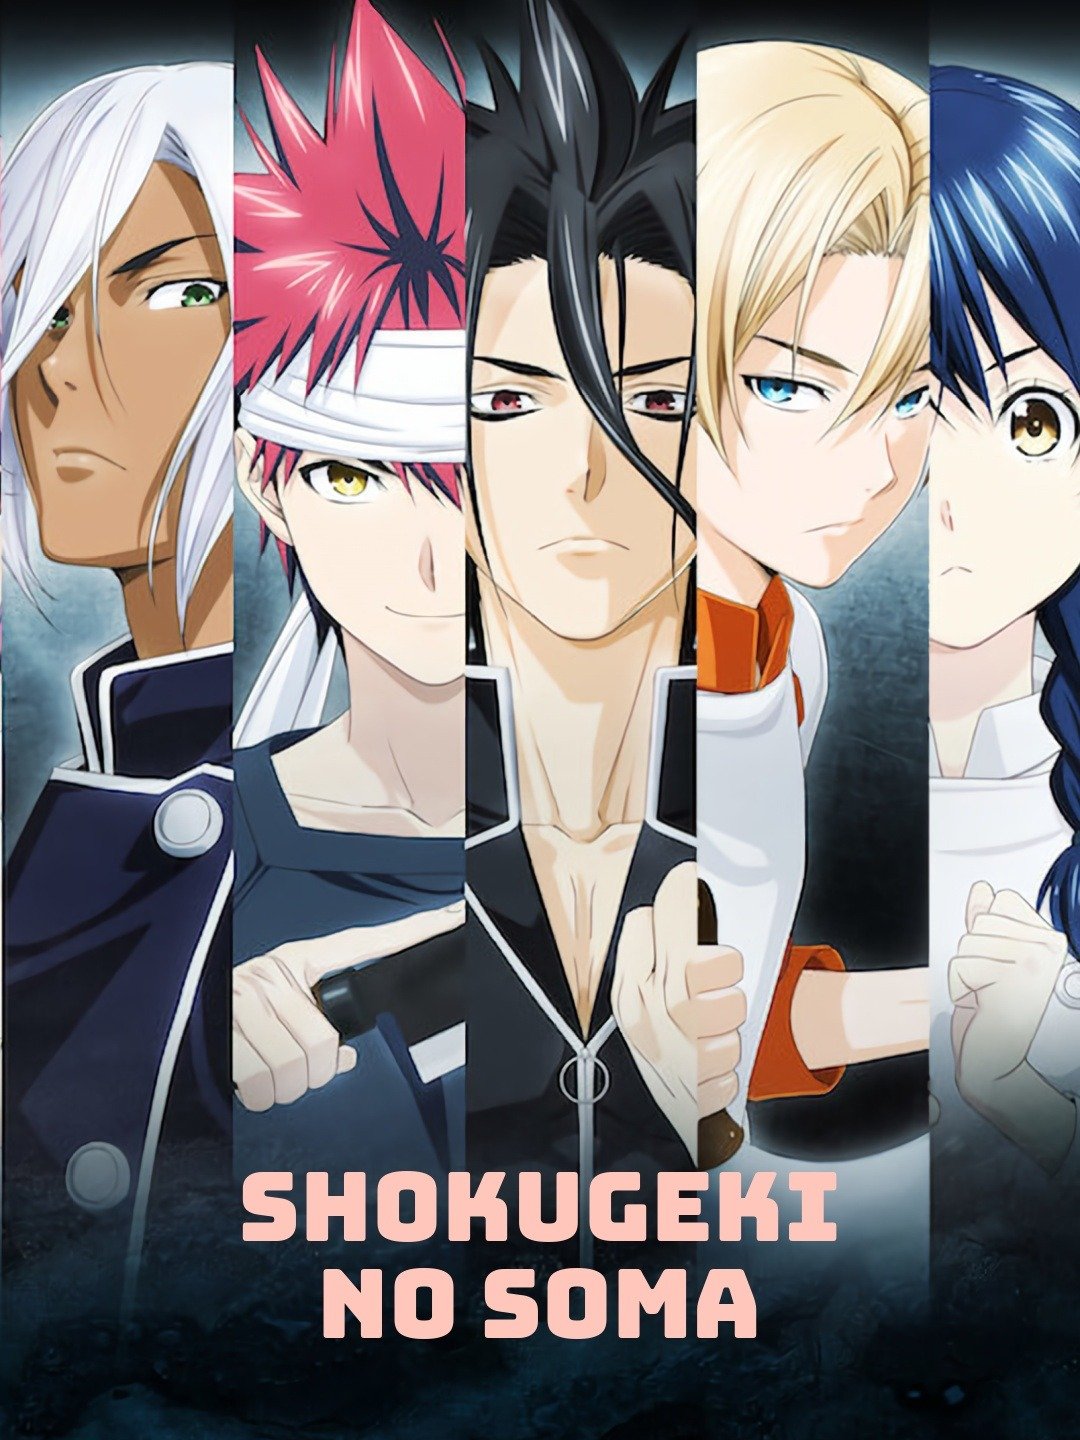 DVD Anime Kyuuketsuki Sugu Shinu Complete TV Series (1-12 End) English Dub  | eBay